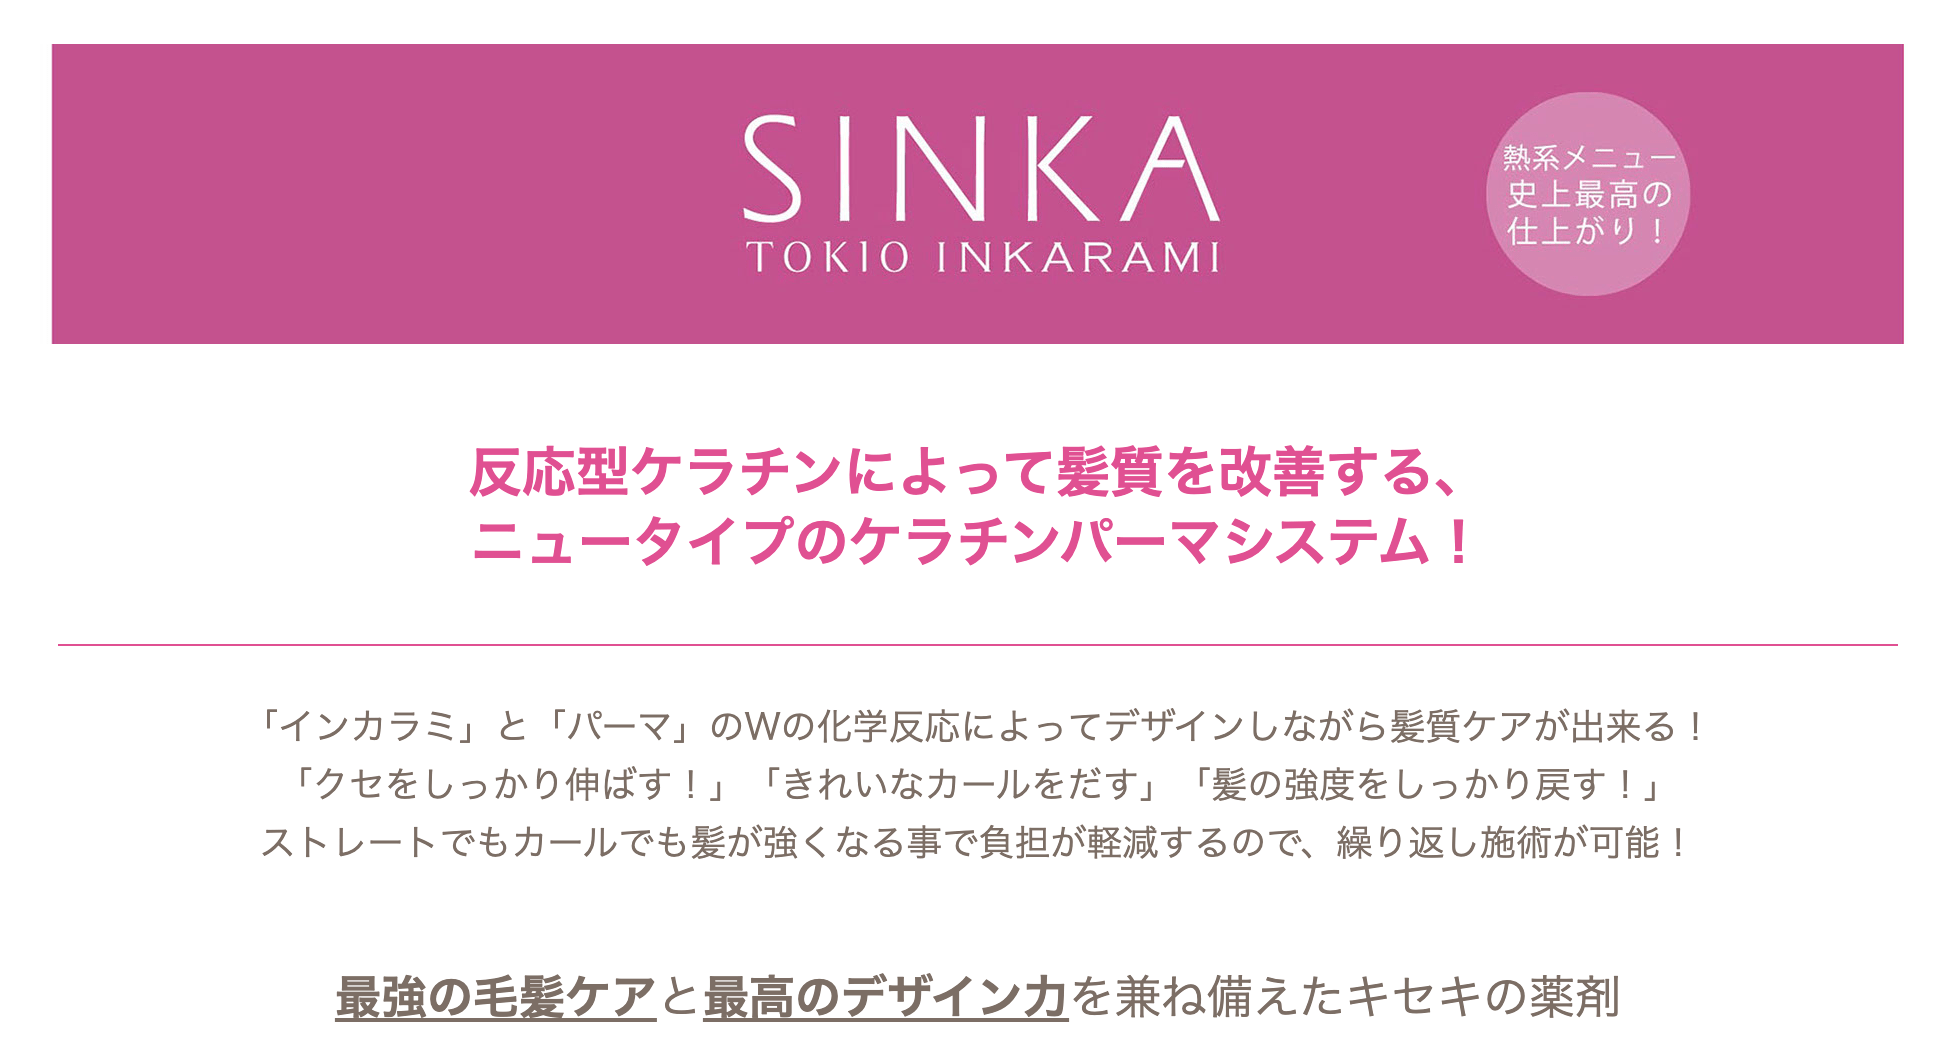 ケラチンパーマシステム『TOKIO de SINKA』